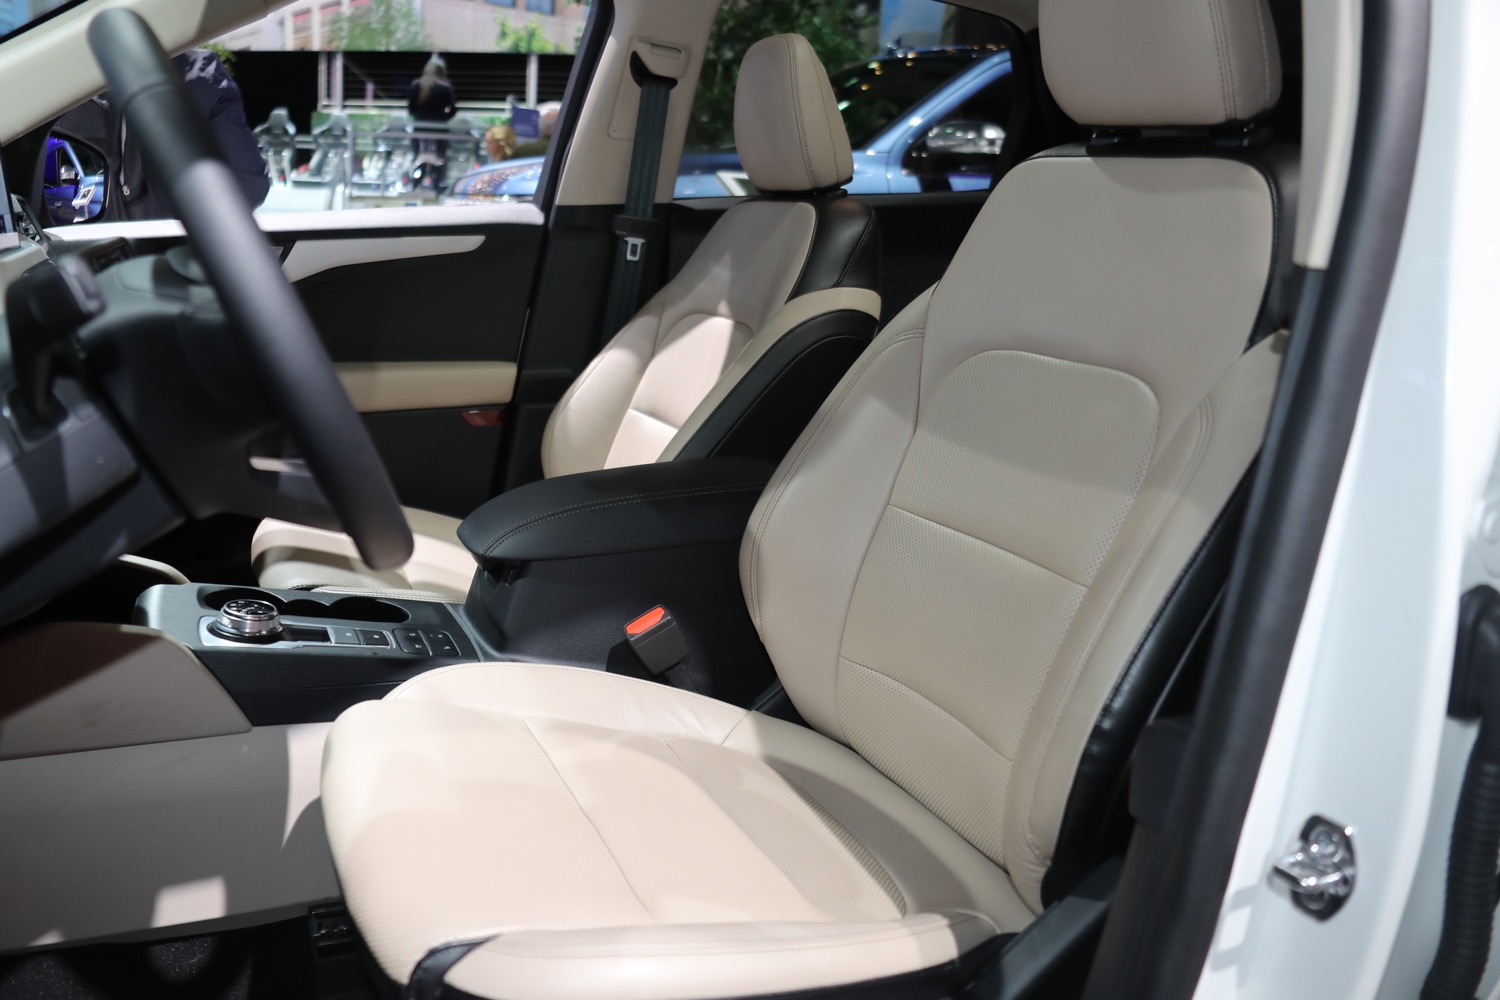 2020 Ford Escape Se Hybrid Interior 2019 New York